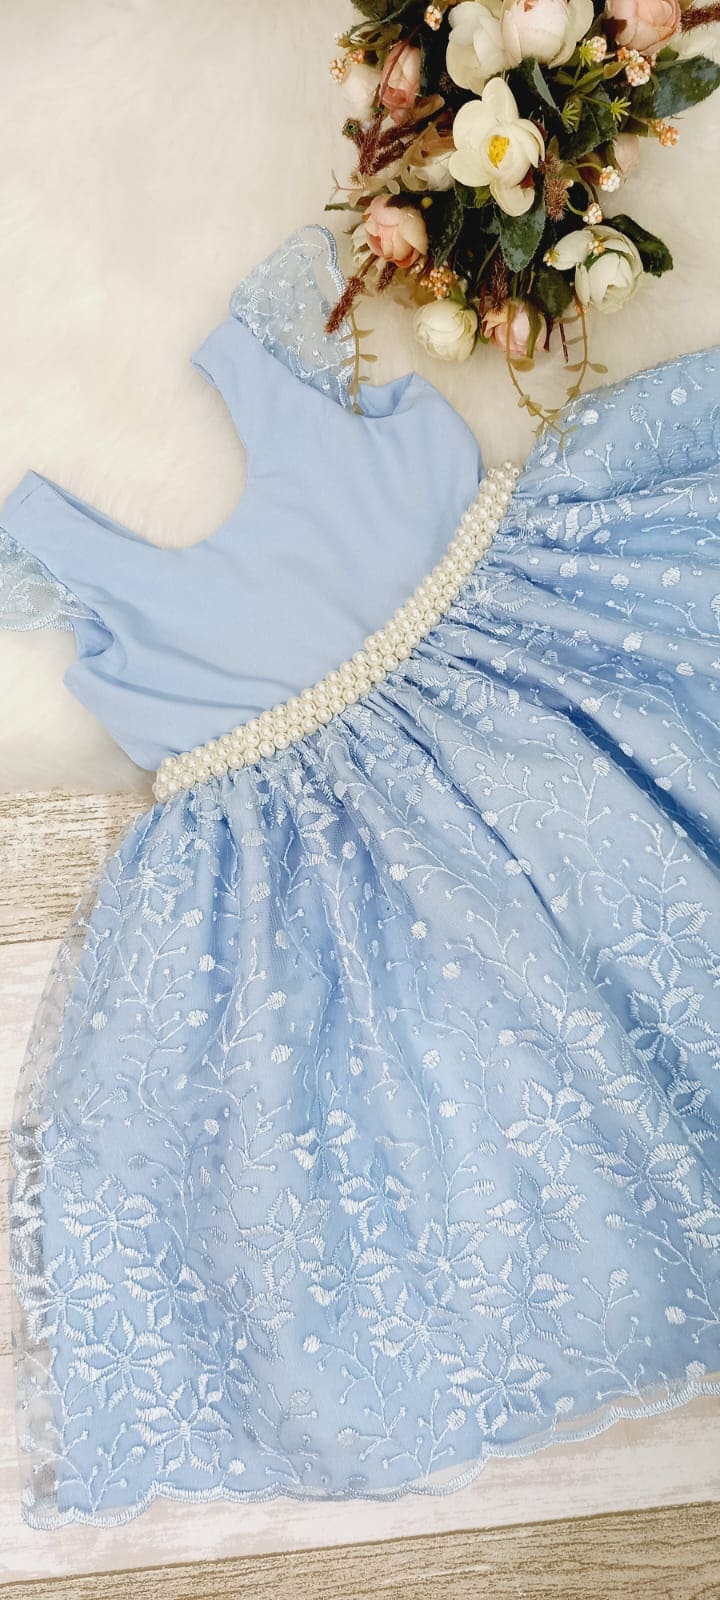 Vestido Festa Infantil Da Cinderela Azul Com Detalhes Amarelo